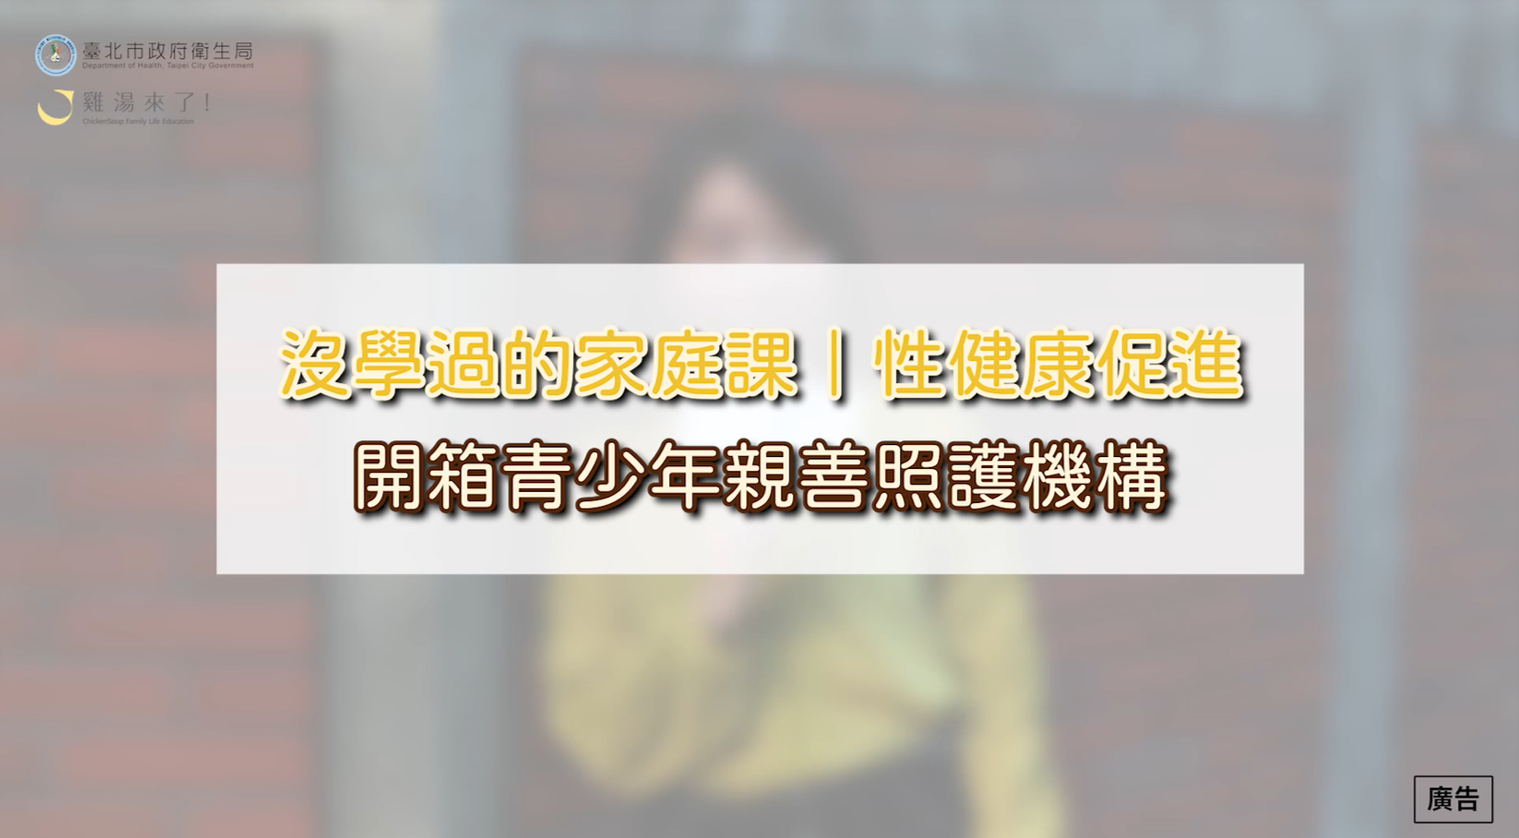 開箱「臺北市青少年親善照護機構」宣導影片